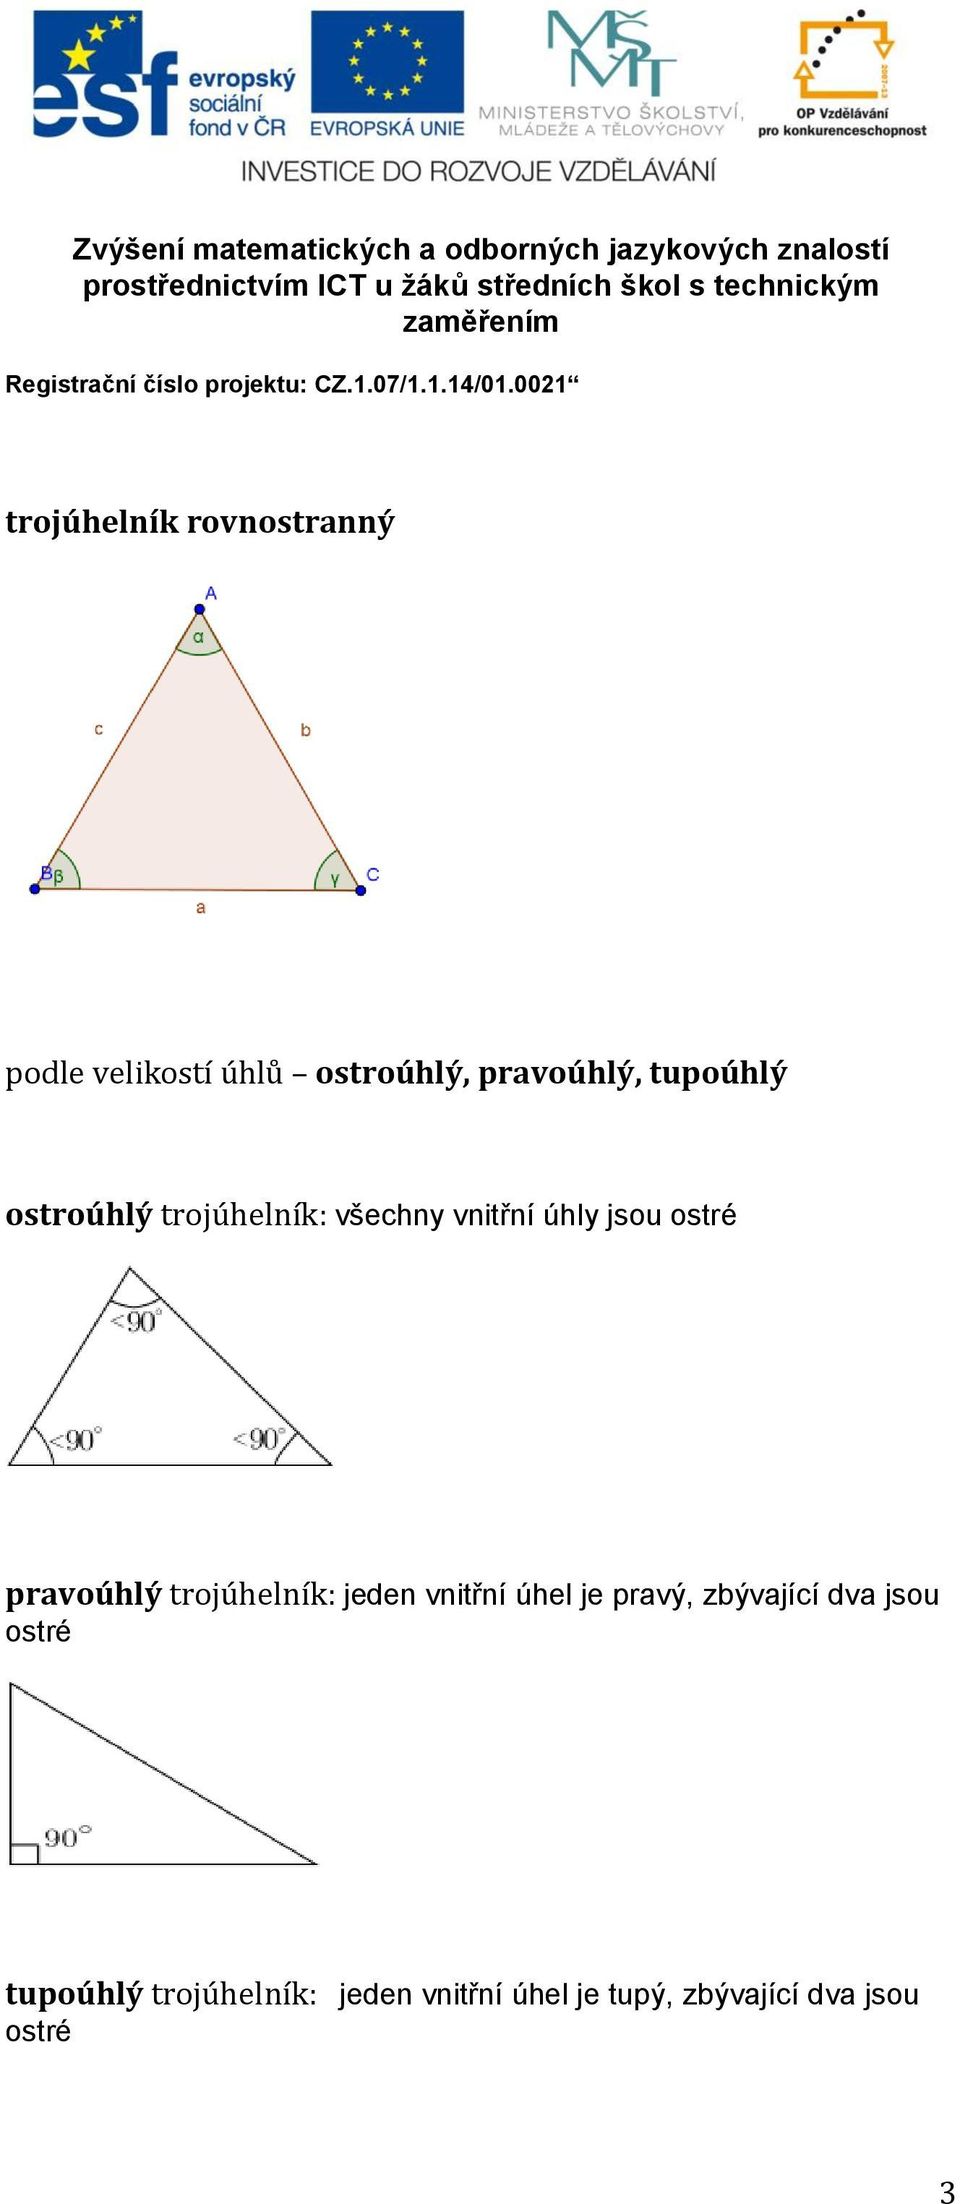 pravoúhlý trojúhelník: jeden vnitřní úhel je pravý, zbývající dva jsou